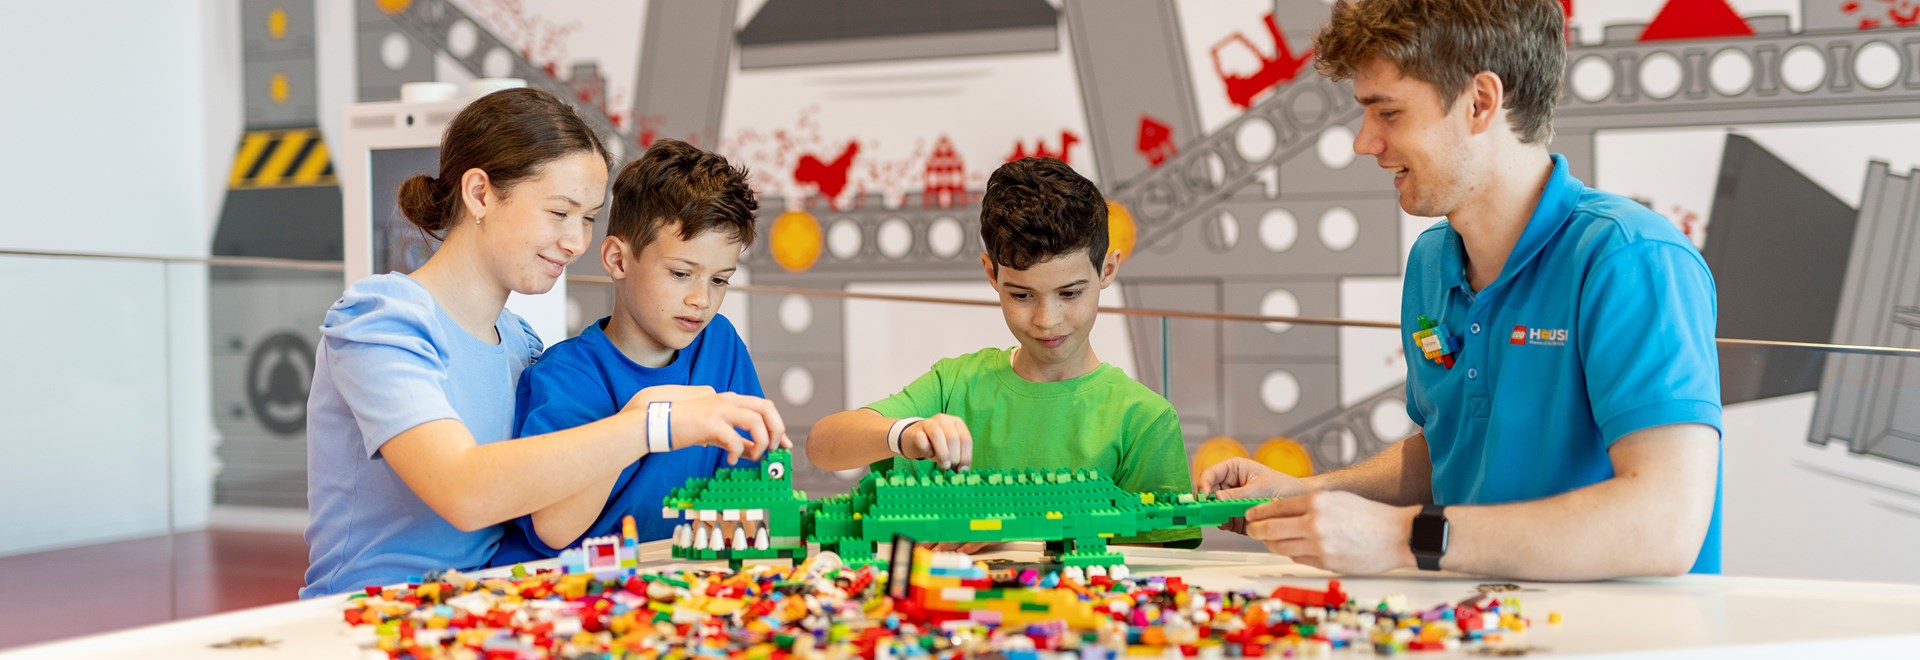 NEW - LEGO House Brick Tour